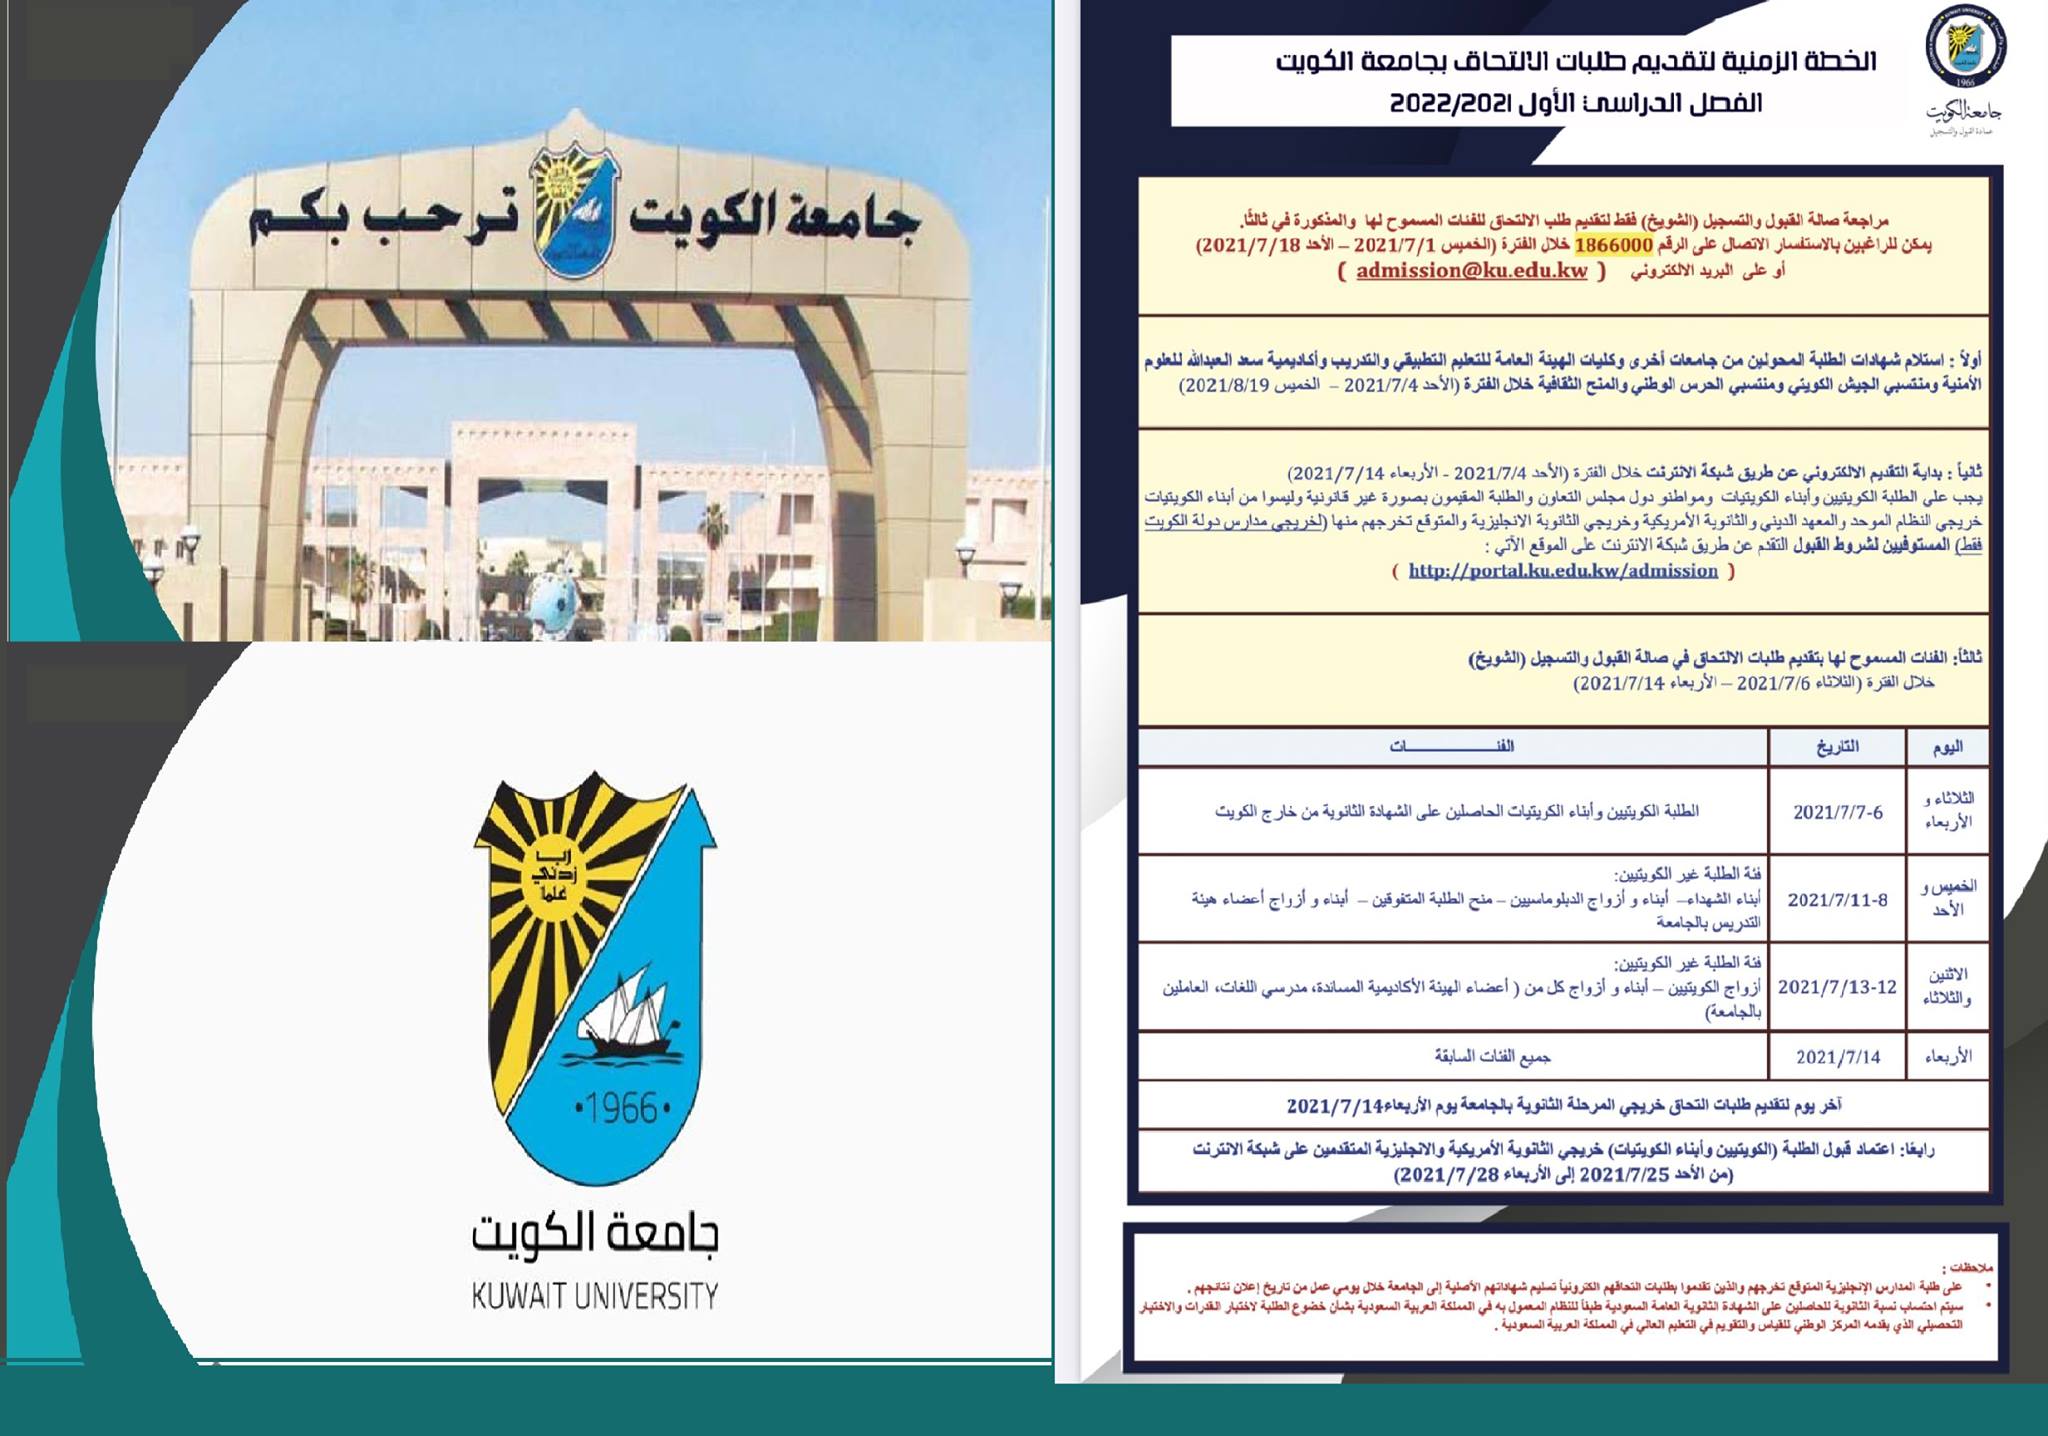 portal.ku.edu.kw نتائج قبول طلاب جامعة الكويت ٢٠٢١ نسب القبول بالكليات وسستم التسجيل